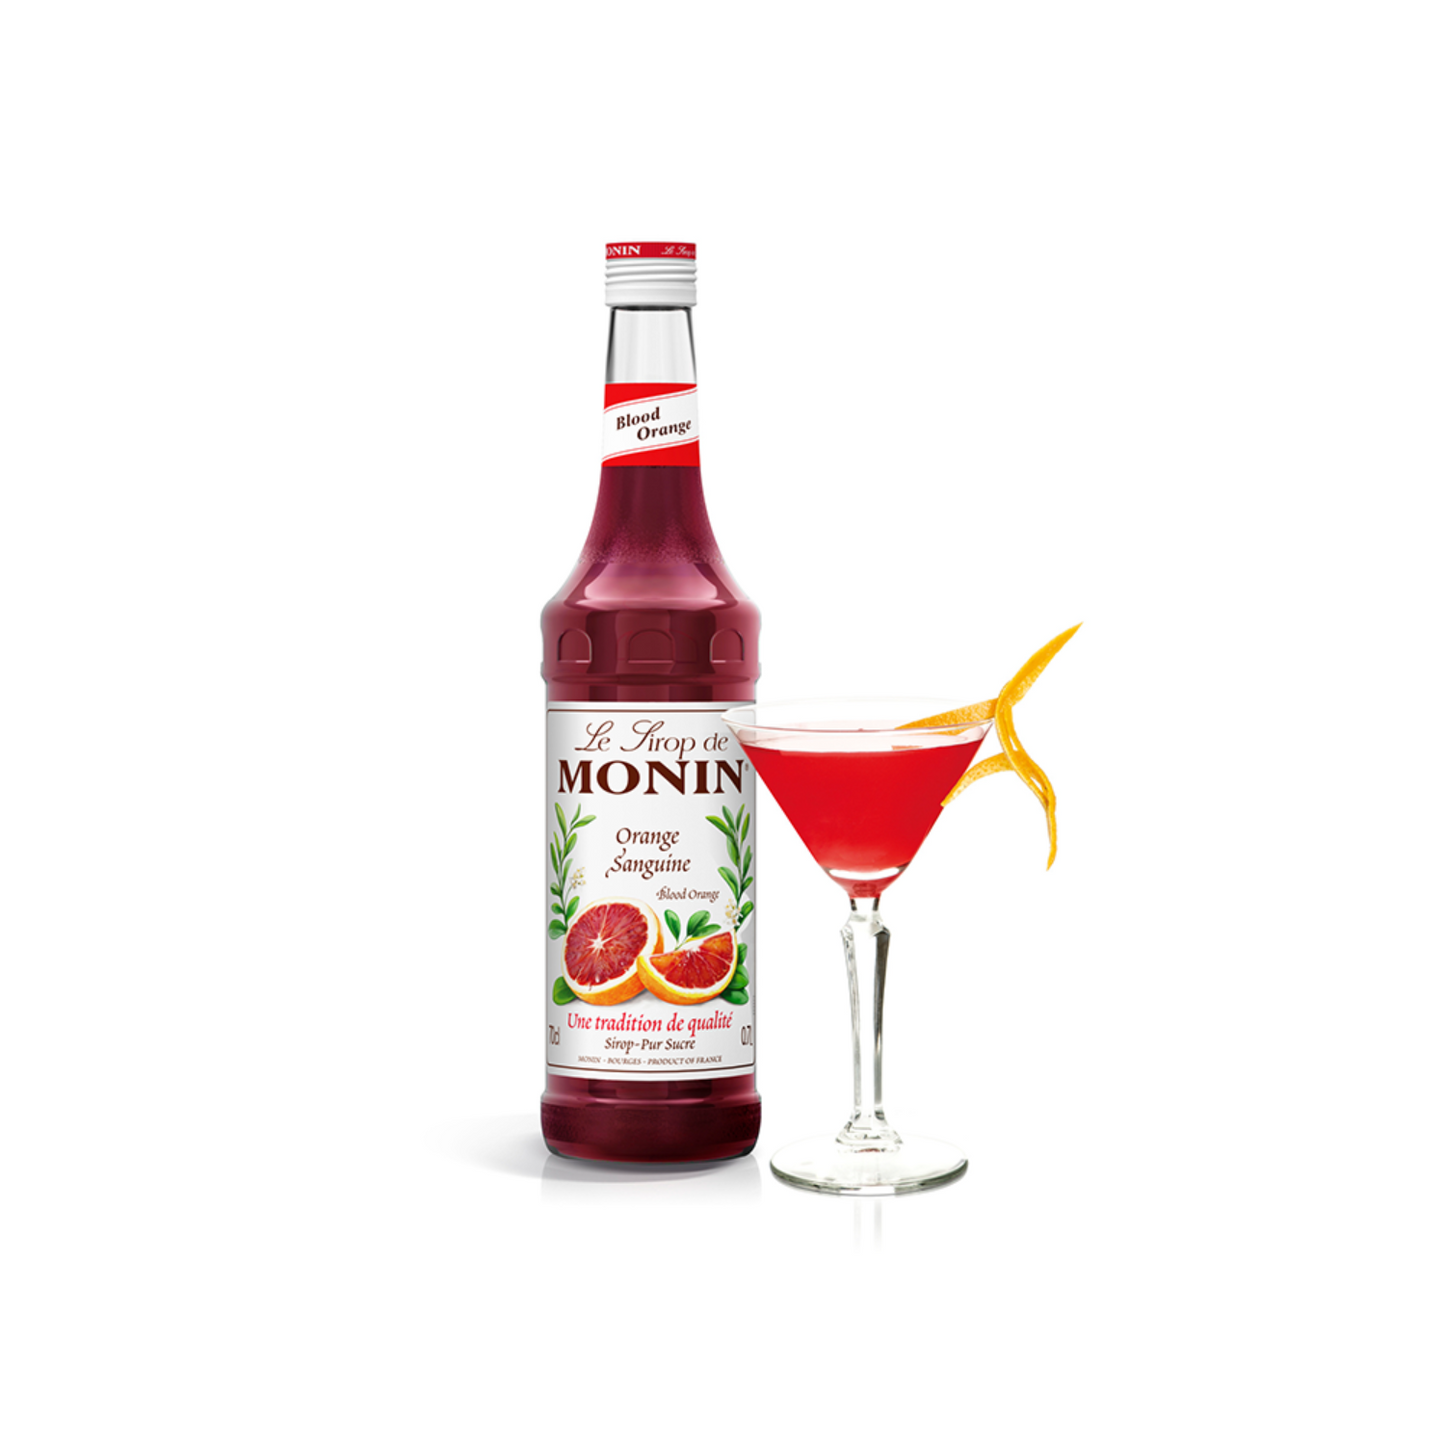 Monin Blood Orange Syrup bottle and cocktail